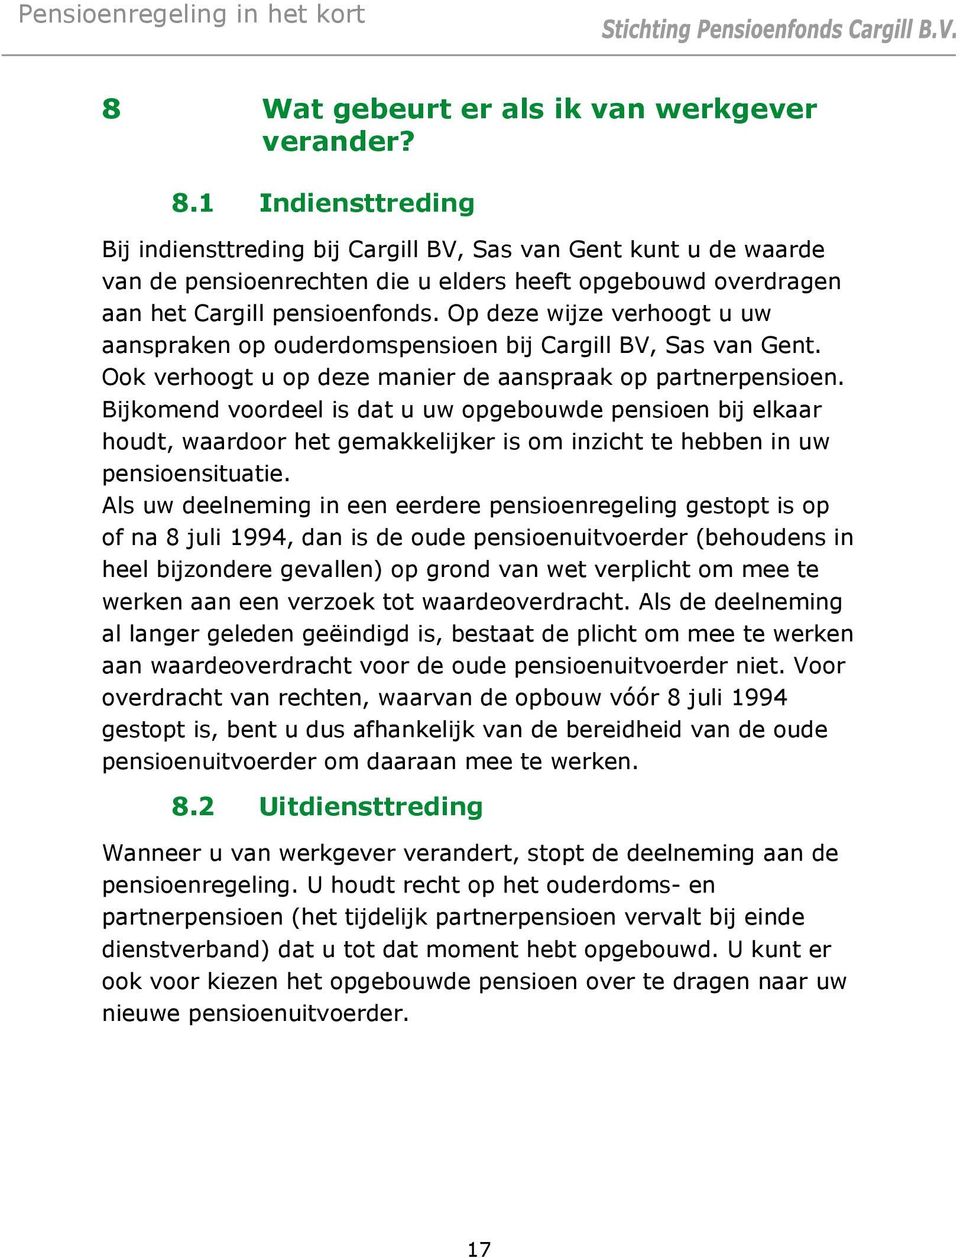 Op deze wijze verhoogt u uw aanspraken op ouderdomspensioen bij Cargill BV, Sas van Gent. Ook verhoogt u op deze manier de aanspraak op partnerpensioen.